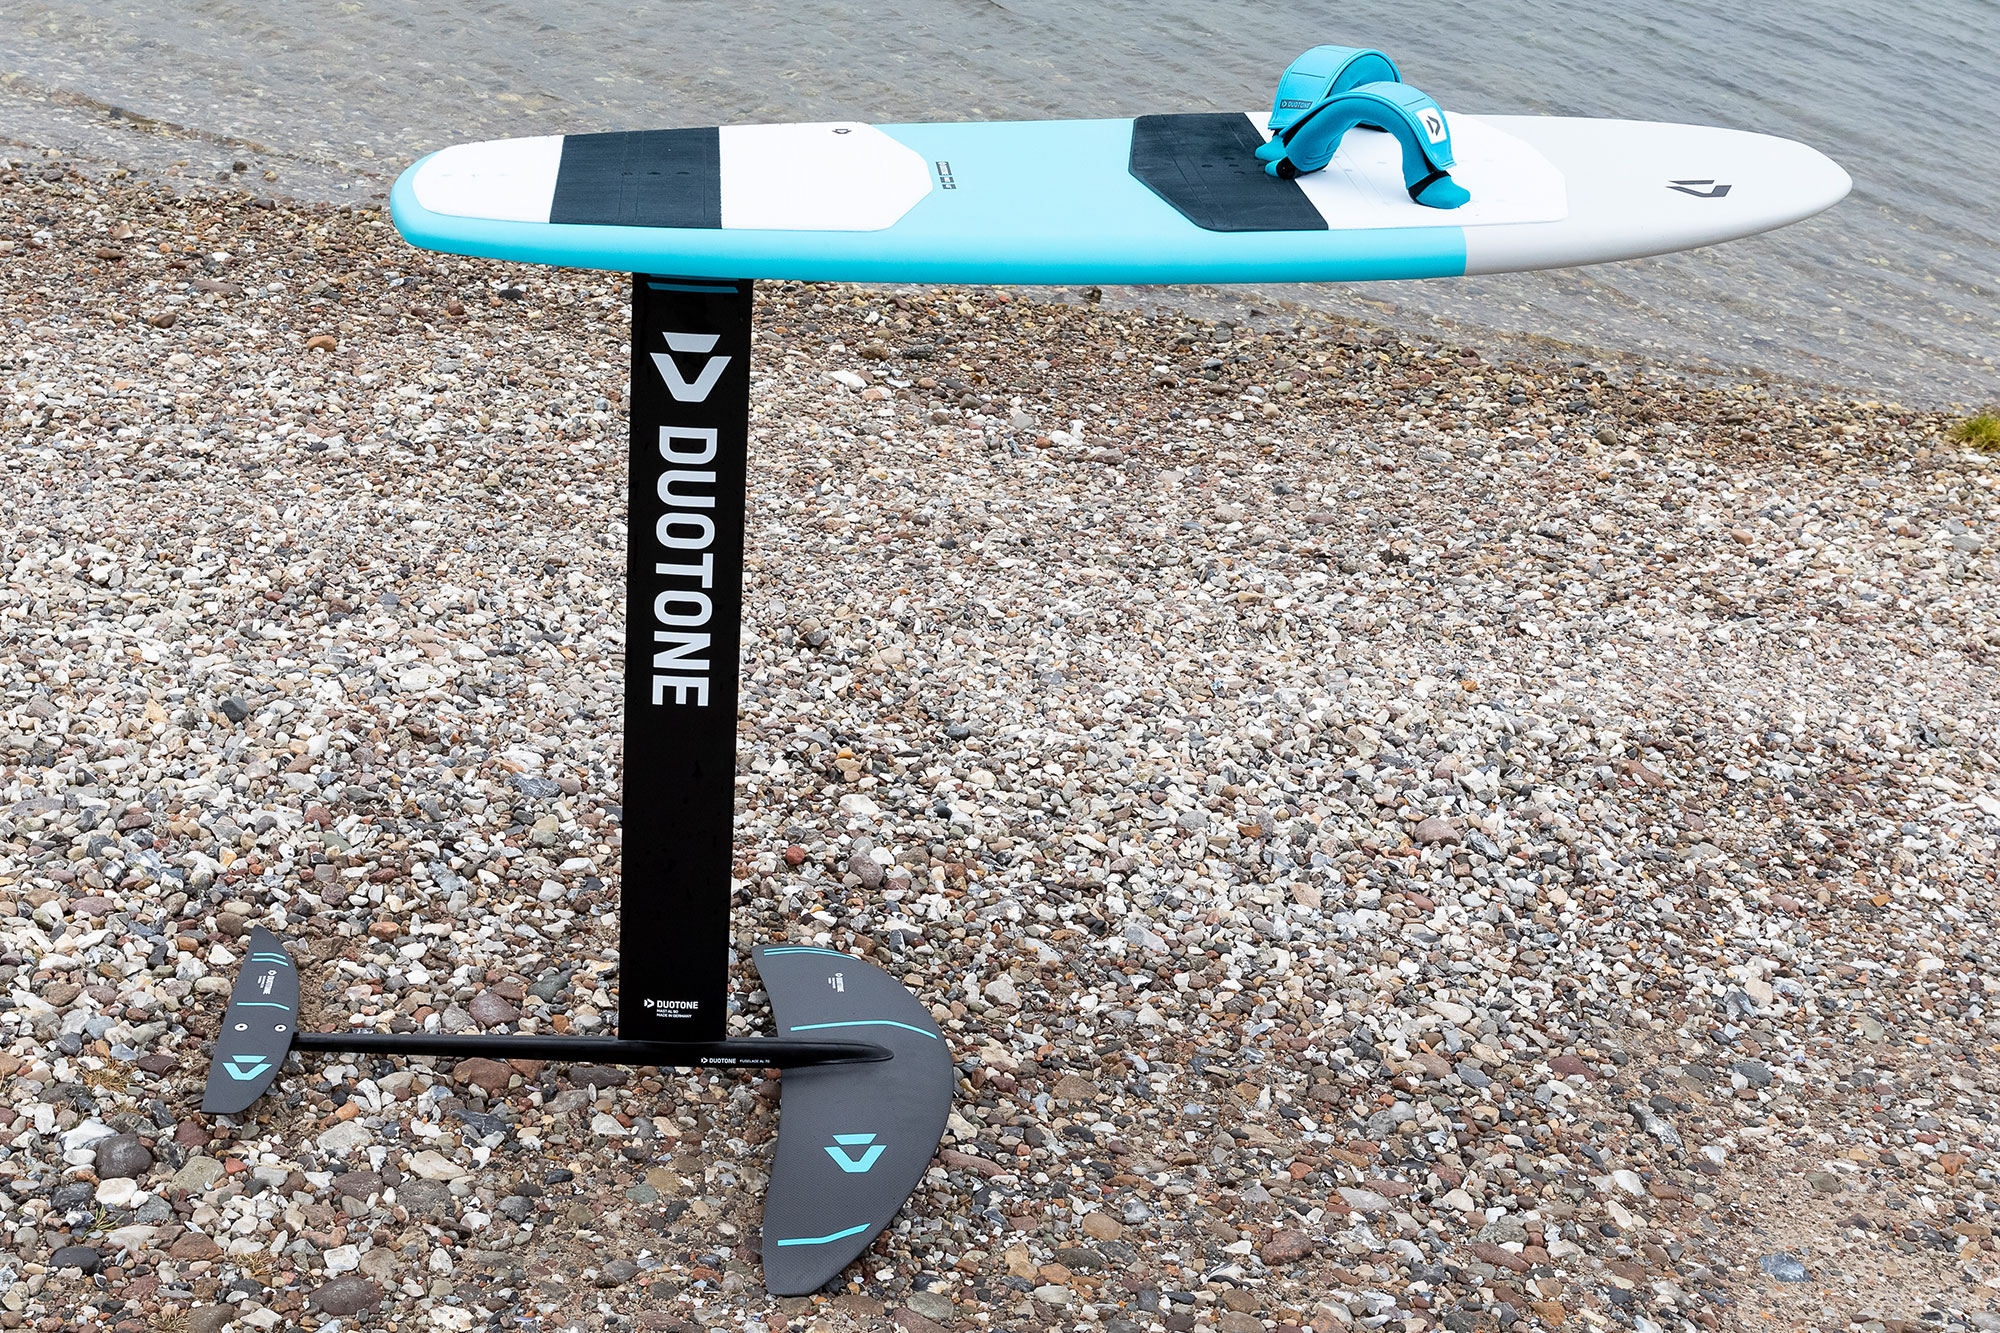 Board mit Foil montiert stehend am Strand